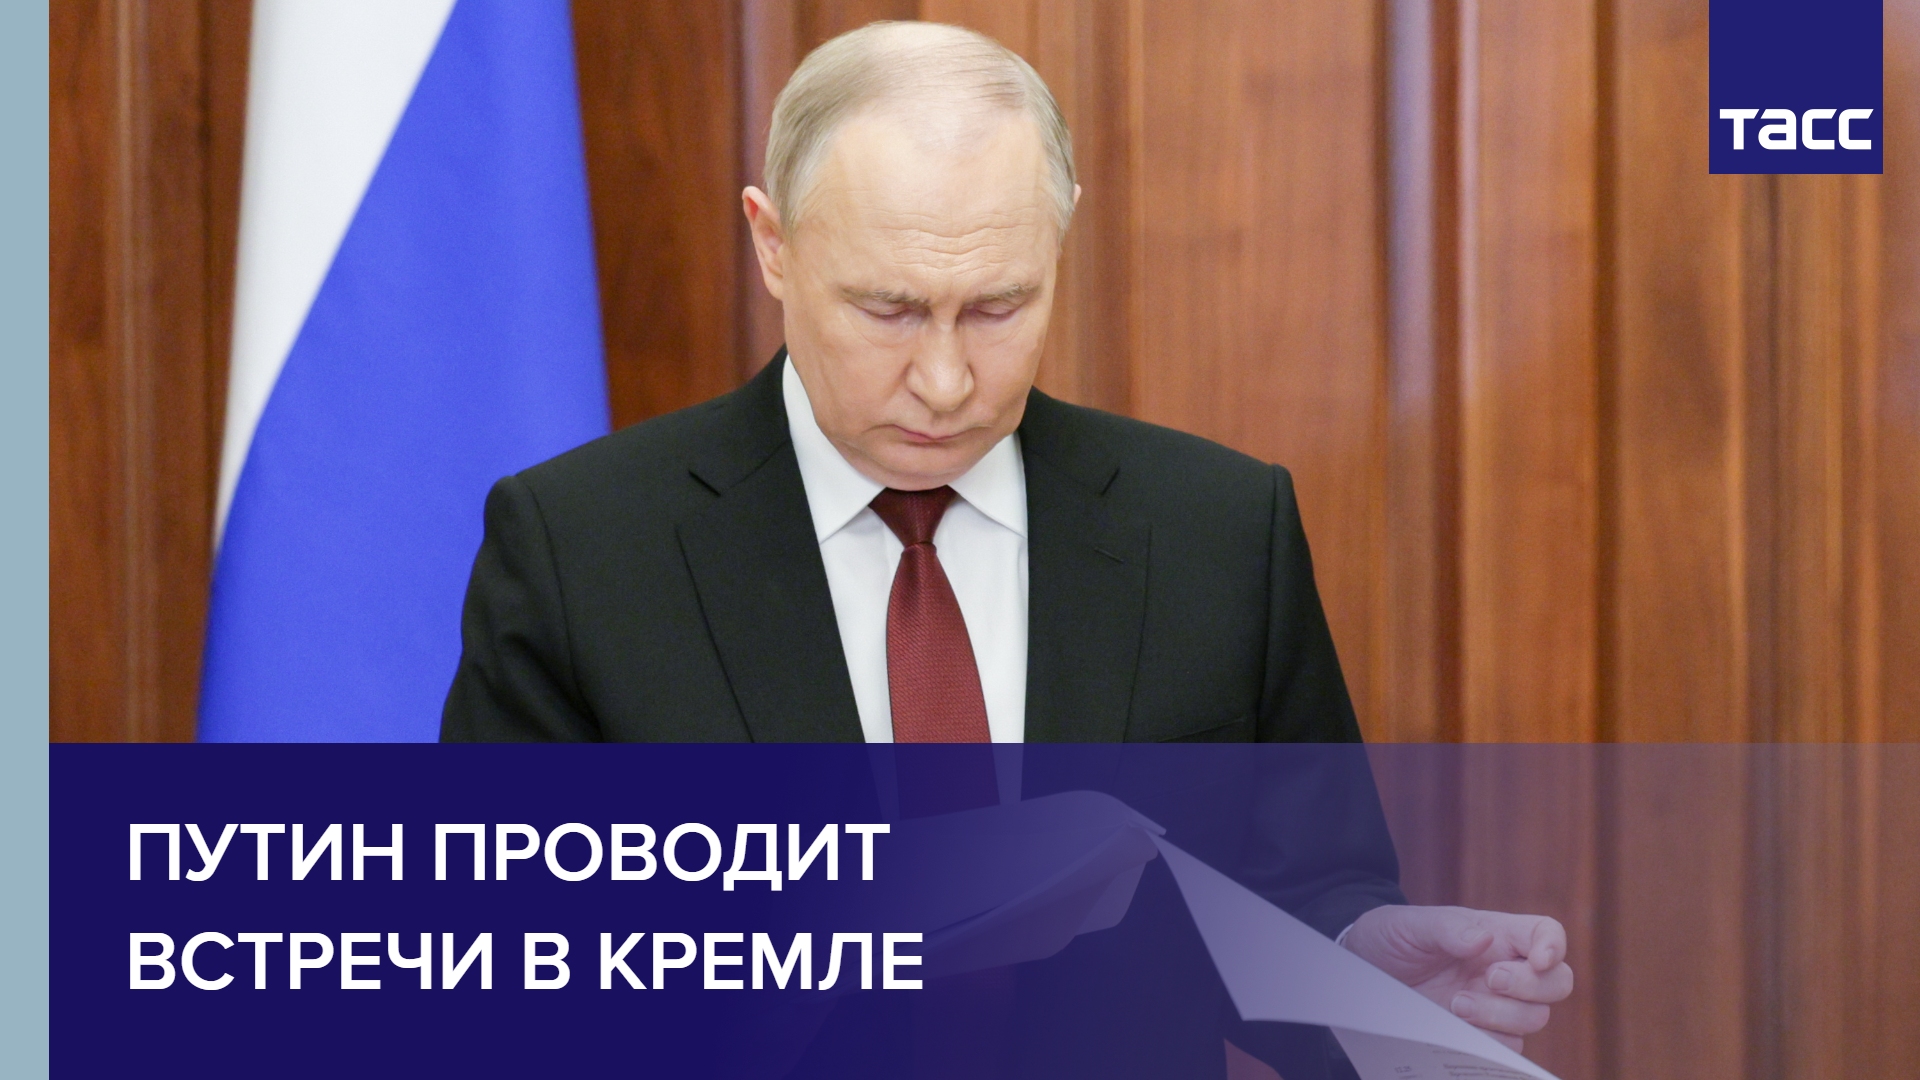 Путин проводит встречи в Кремле